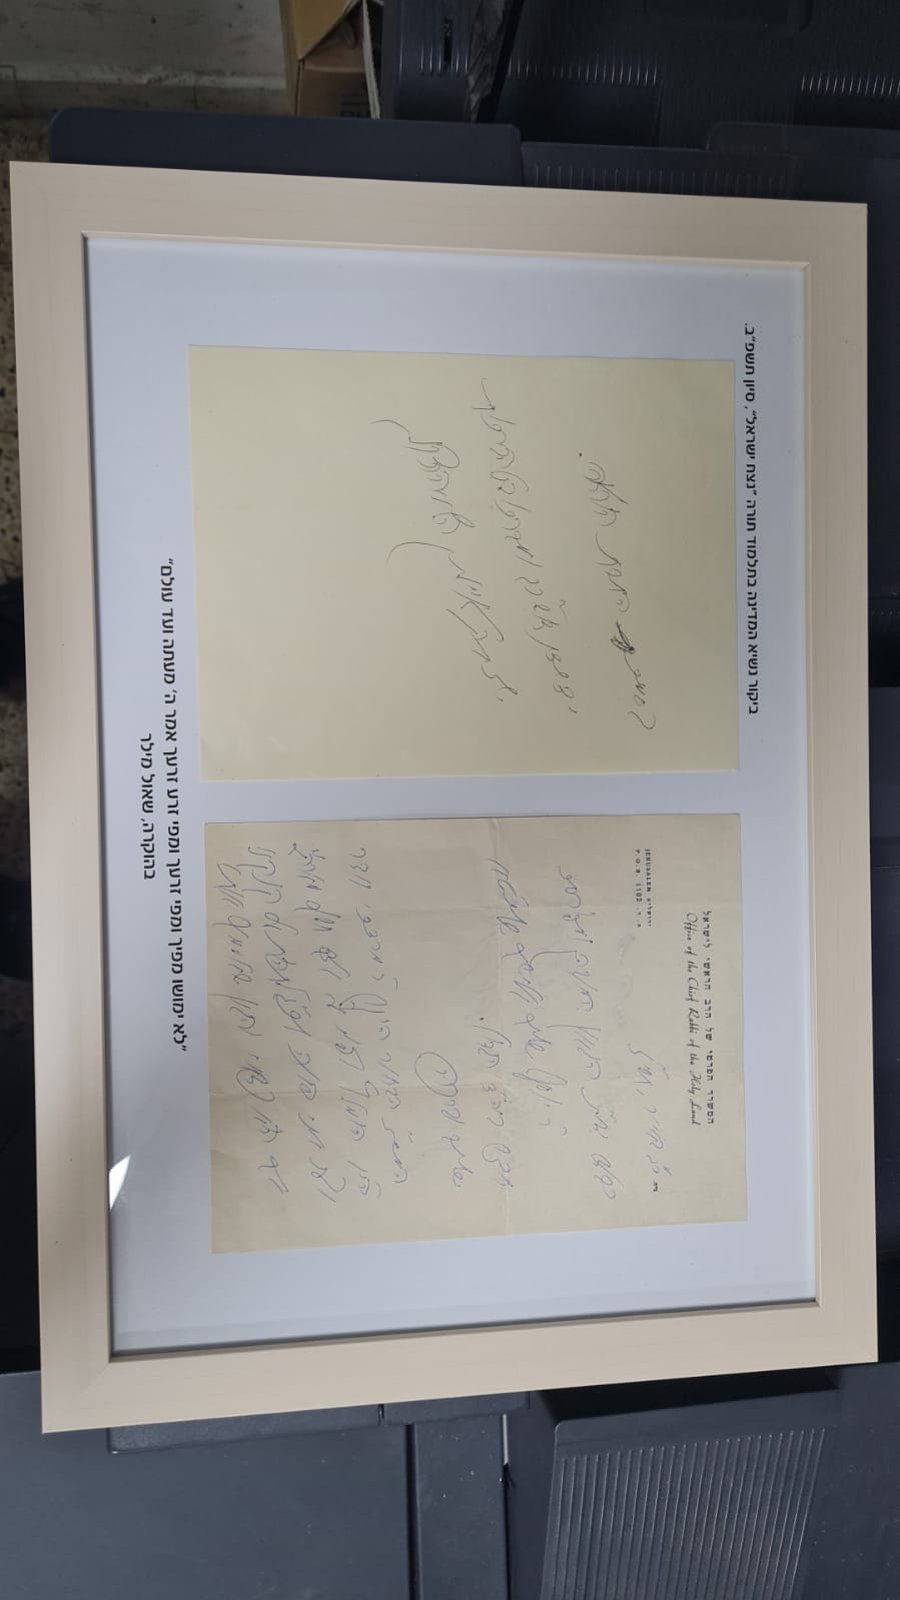 הנשיא קיבל מכתב שמרן הגרי"ש שלח לסבו